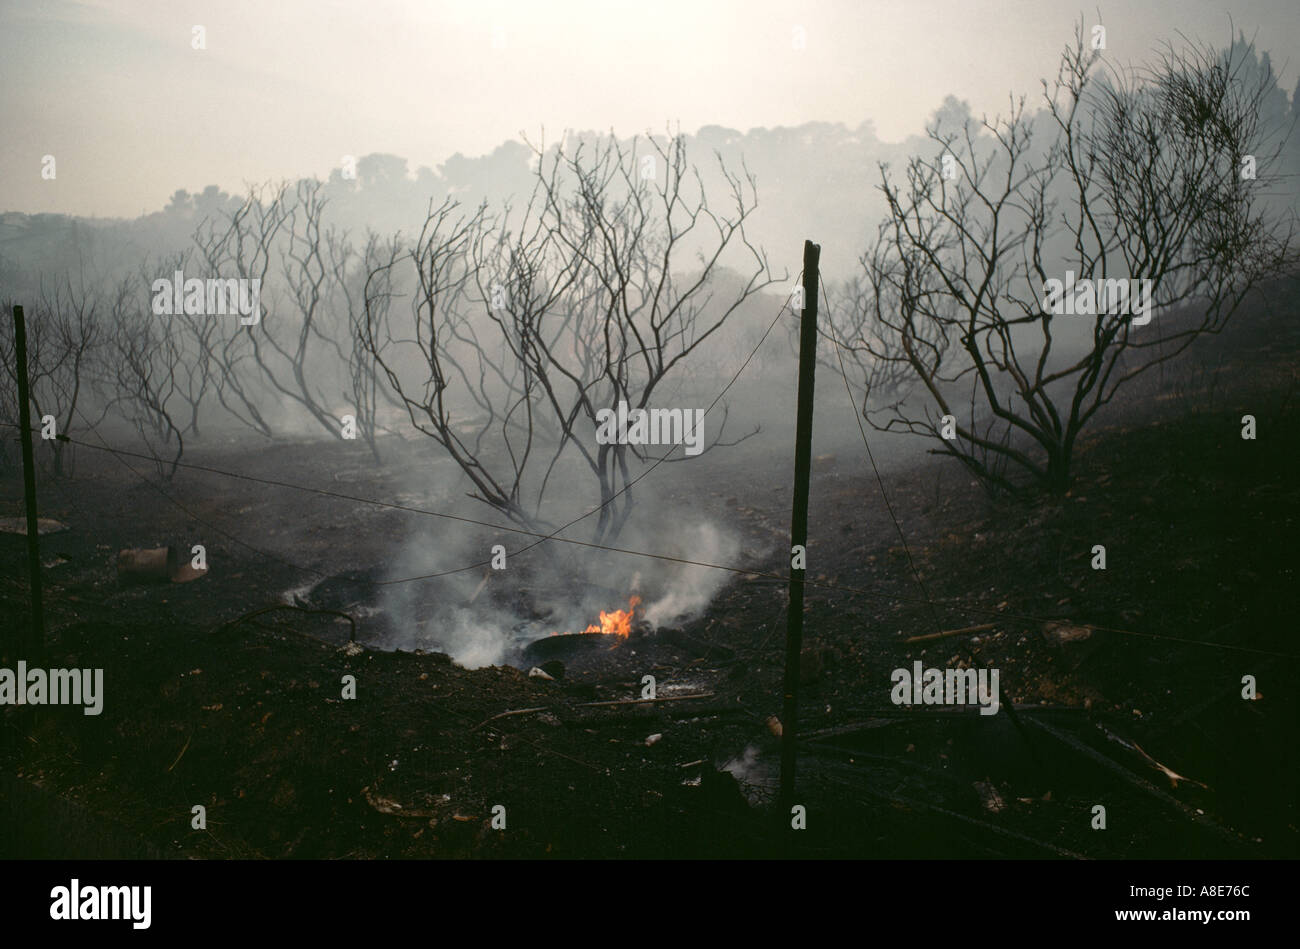 Forêts brûlées, des flammes, de la fumée des incendies, d'arbres morts silhouettes, suite d'un incendie de forêt, près d'Avignon, Vaucluse, Provence, France, Europe, Banque D'Images